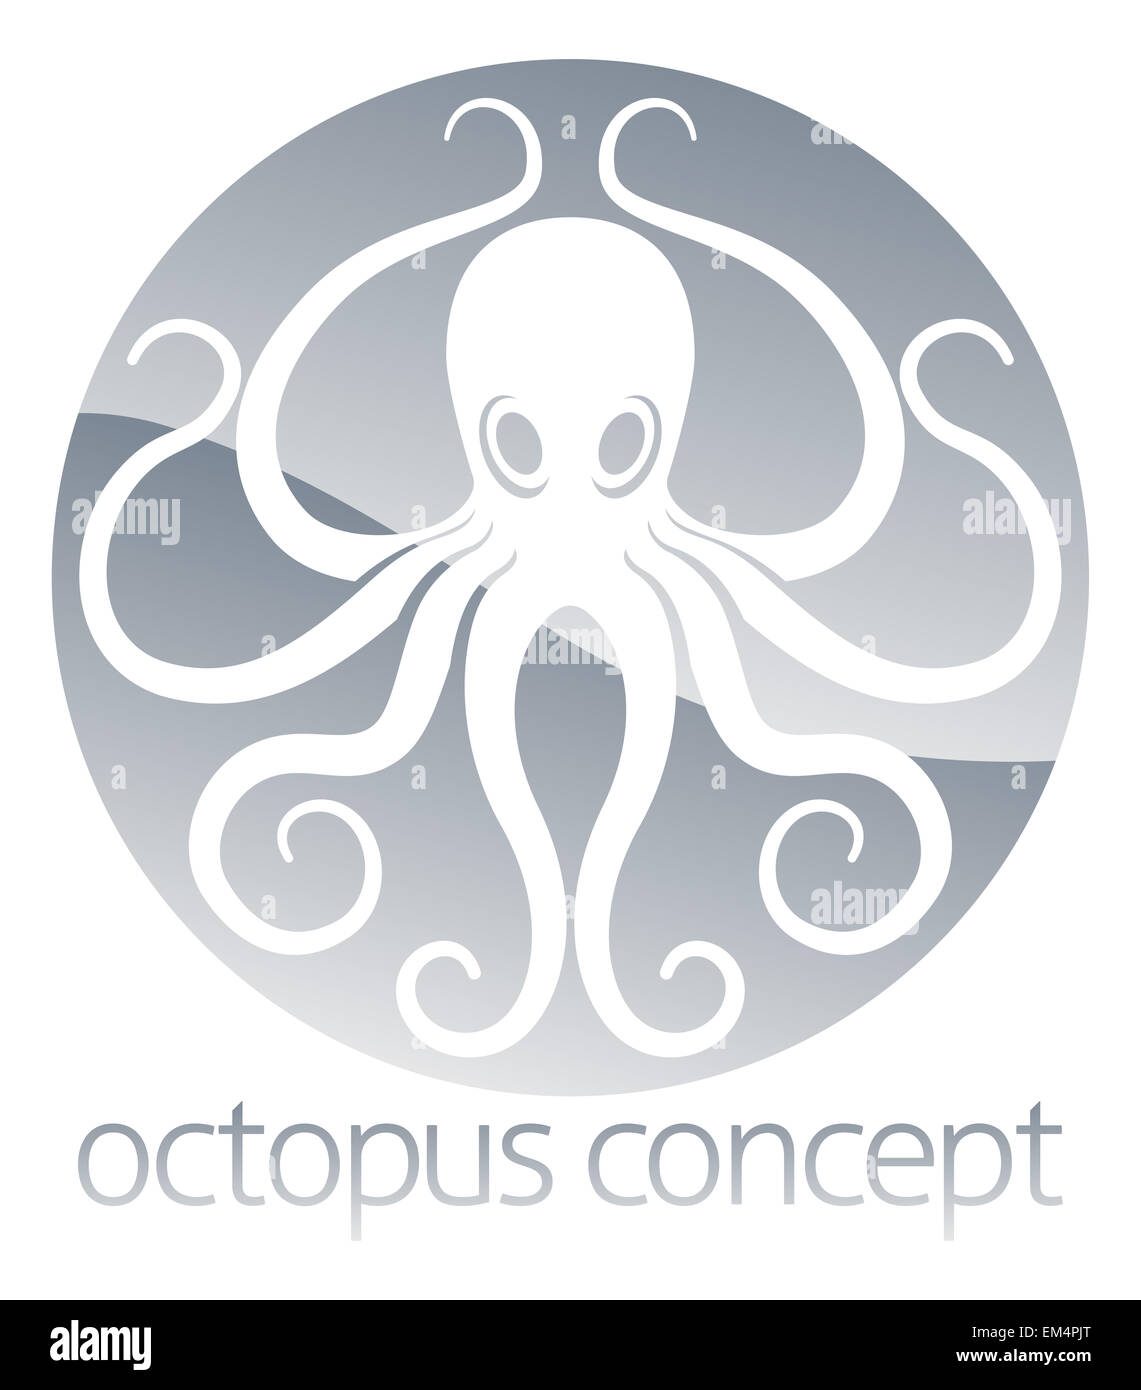 Un résumé illustration d'un octopus circle concept design Banque D'Images